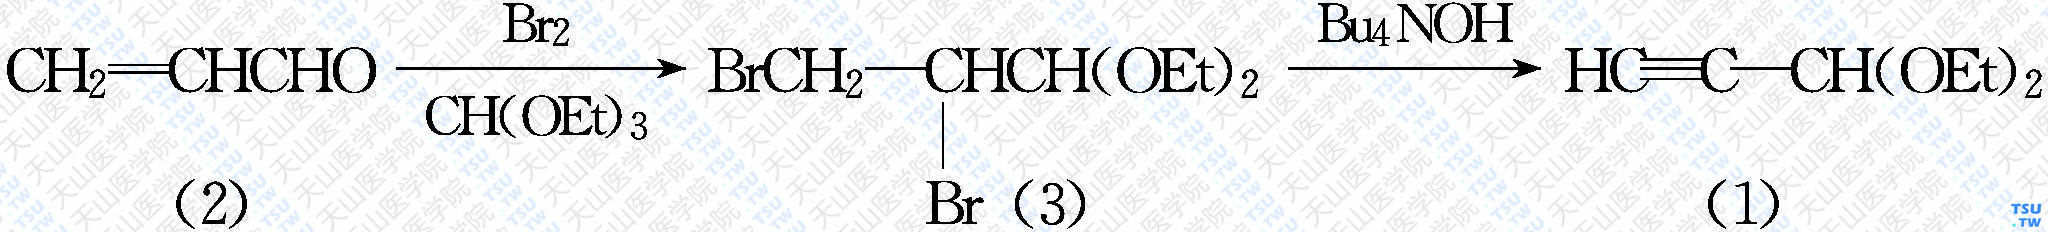 炔丙醛缩二乙醇（分子式：C<sub>7</sub>H<sub>12</sub>O）的合成方法路线及其结构式